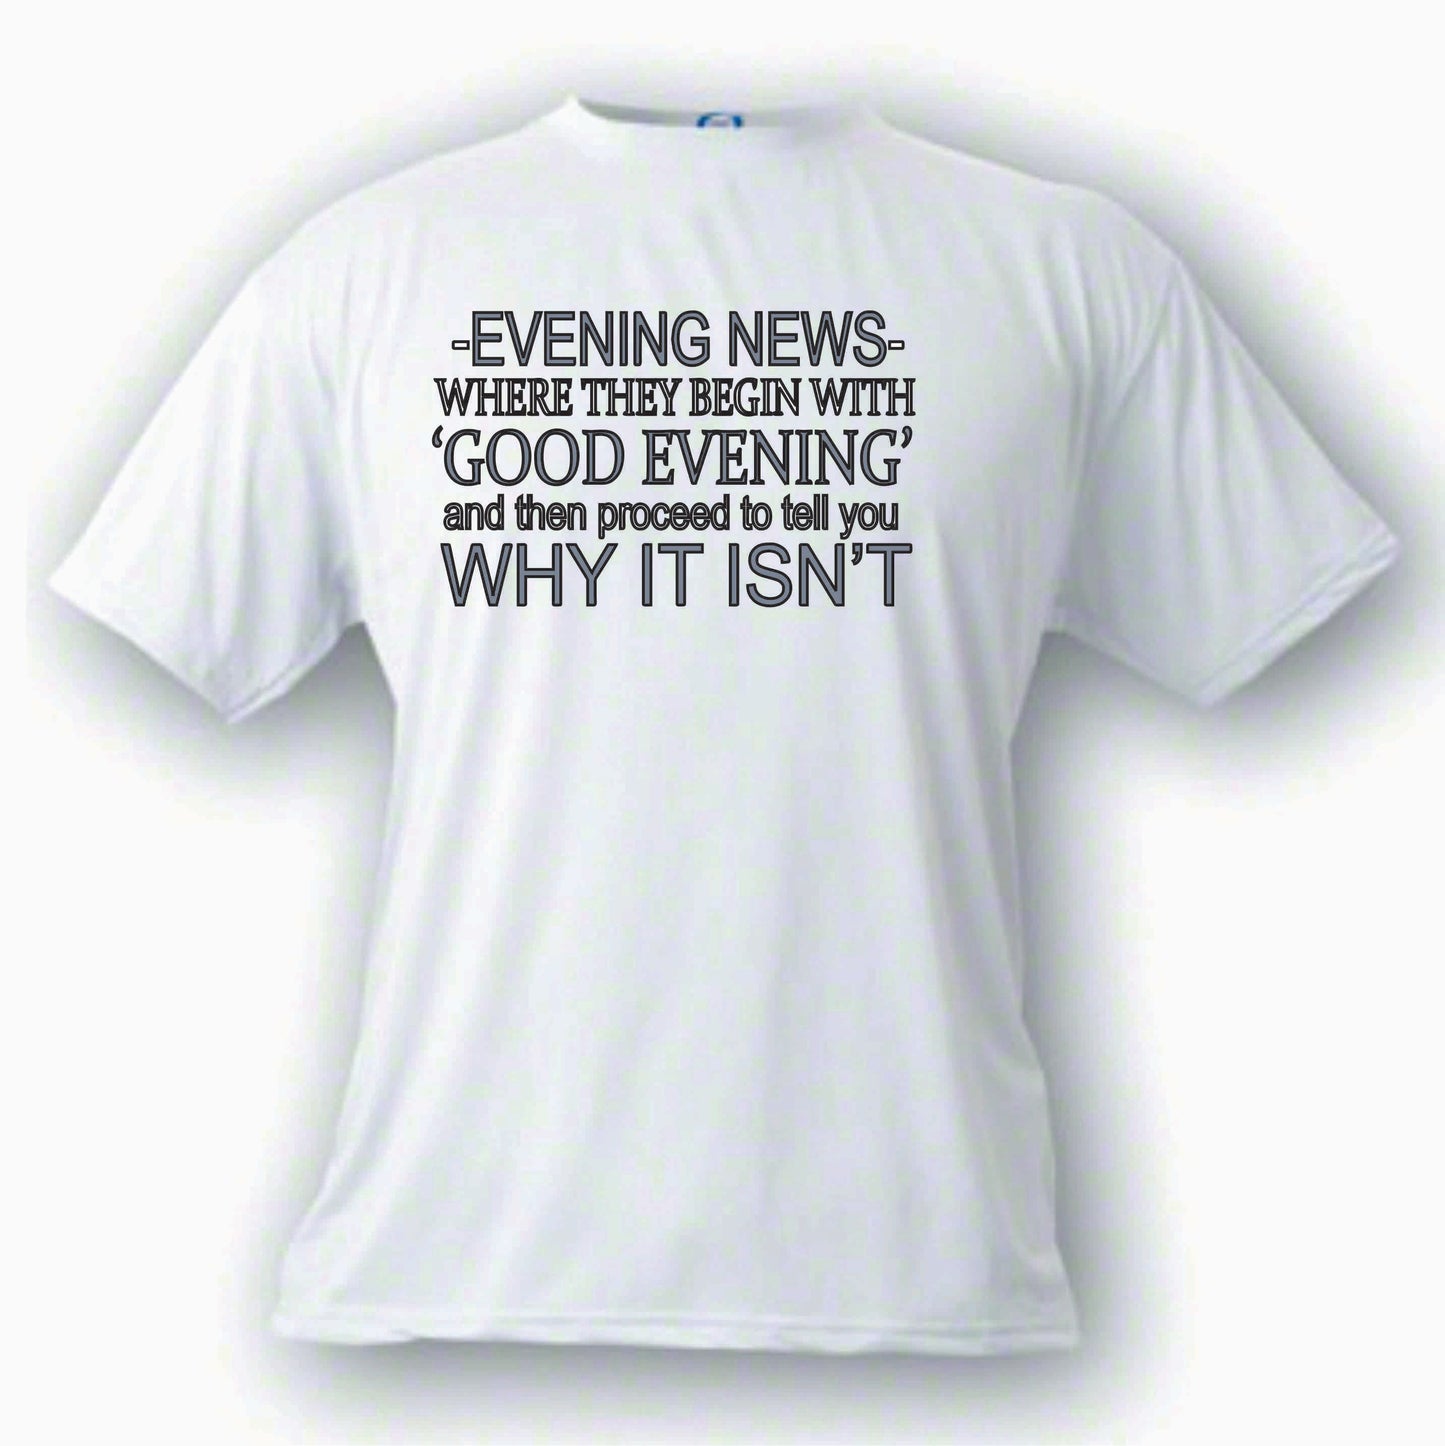 Evening News Good Isn't it T shirt Custom Made